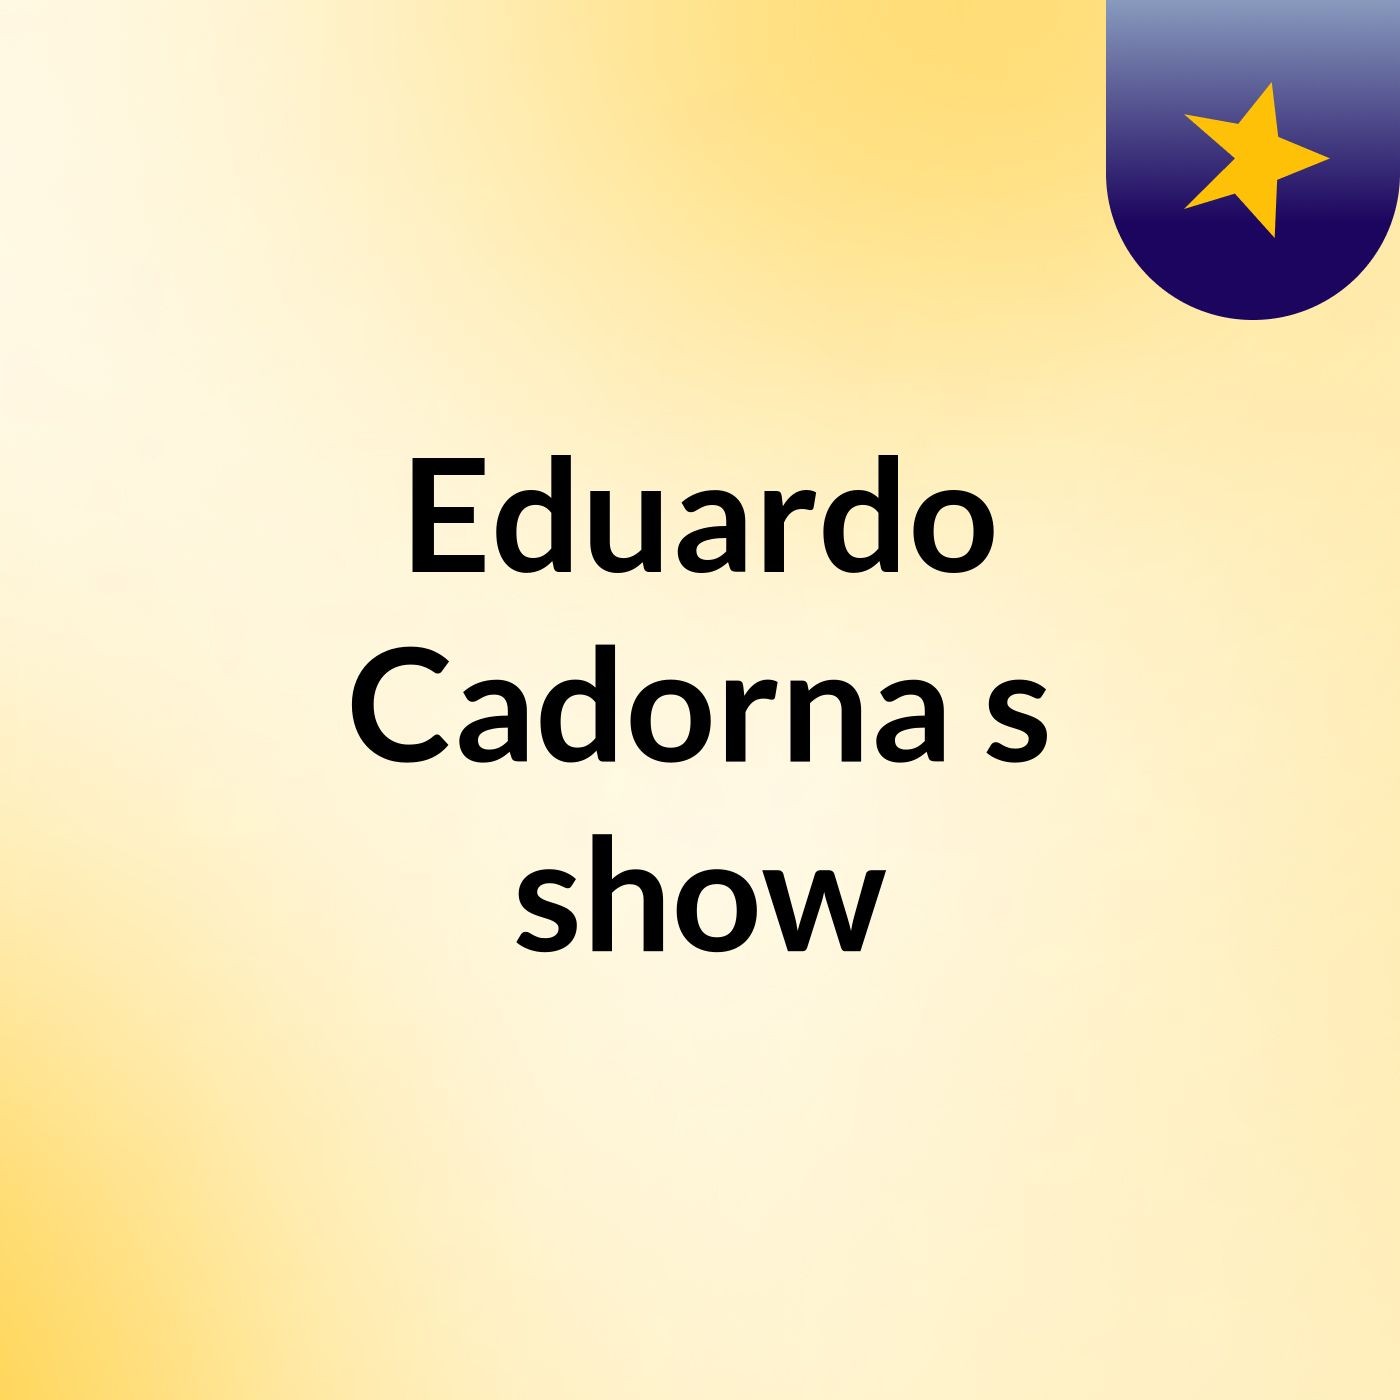 Eduardo Cadorna's show